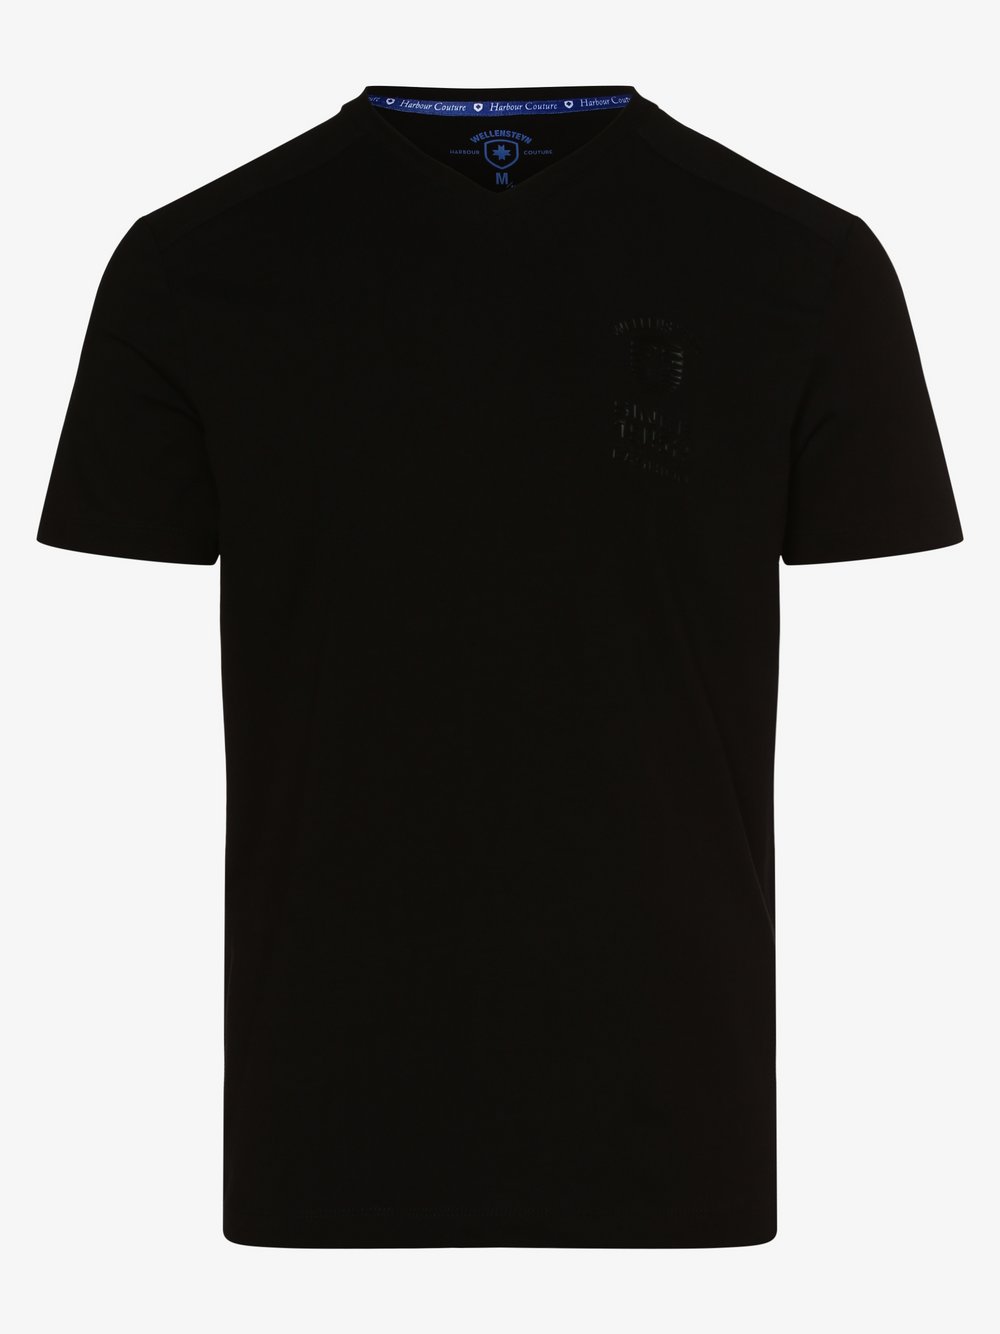 Wellensteyn - T-shirt męski, czarny